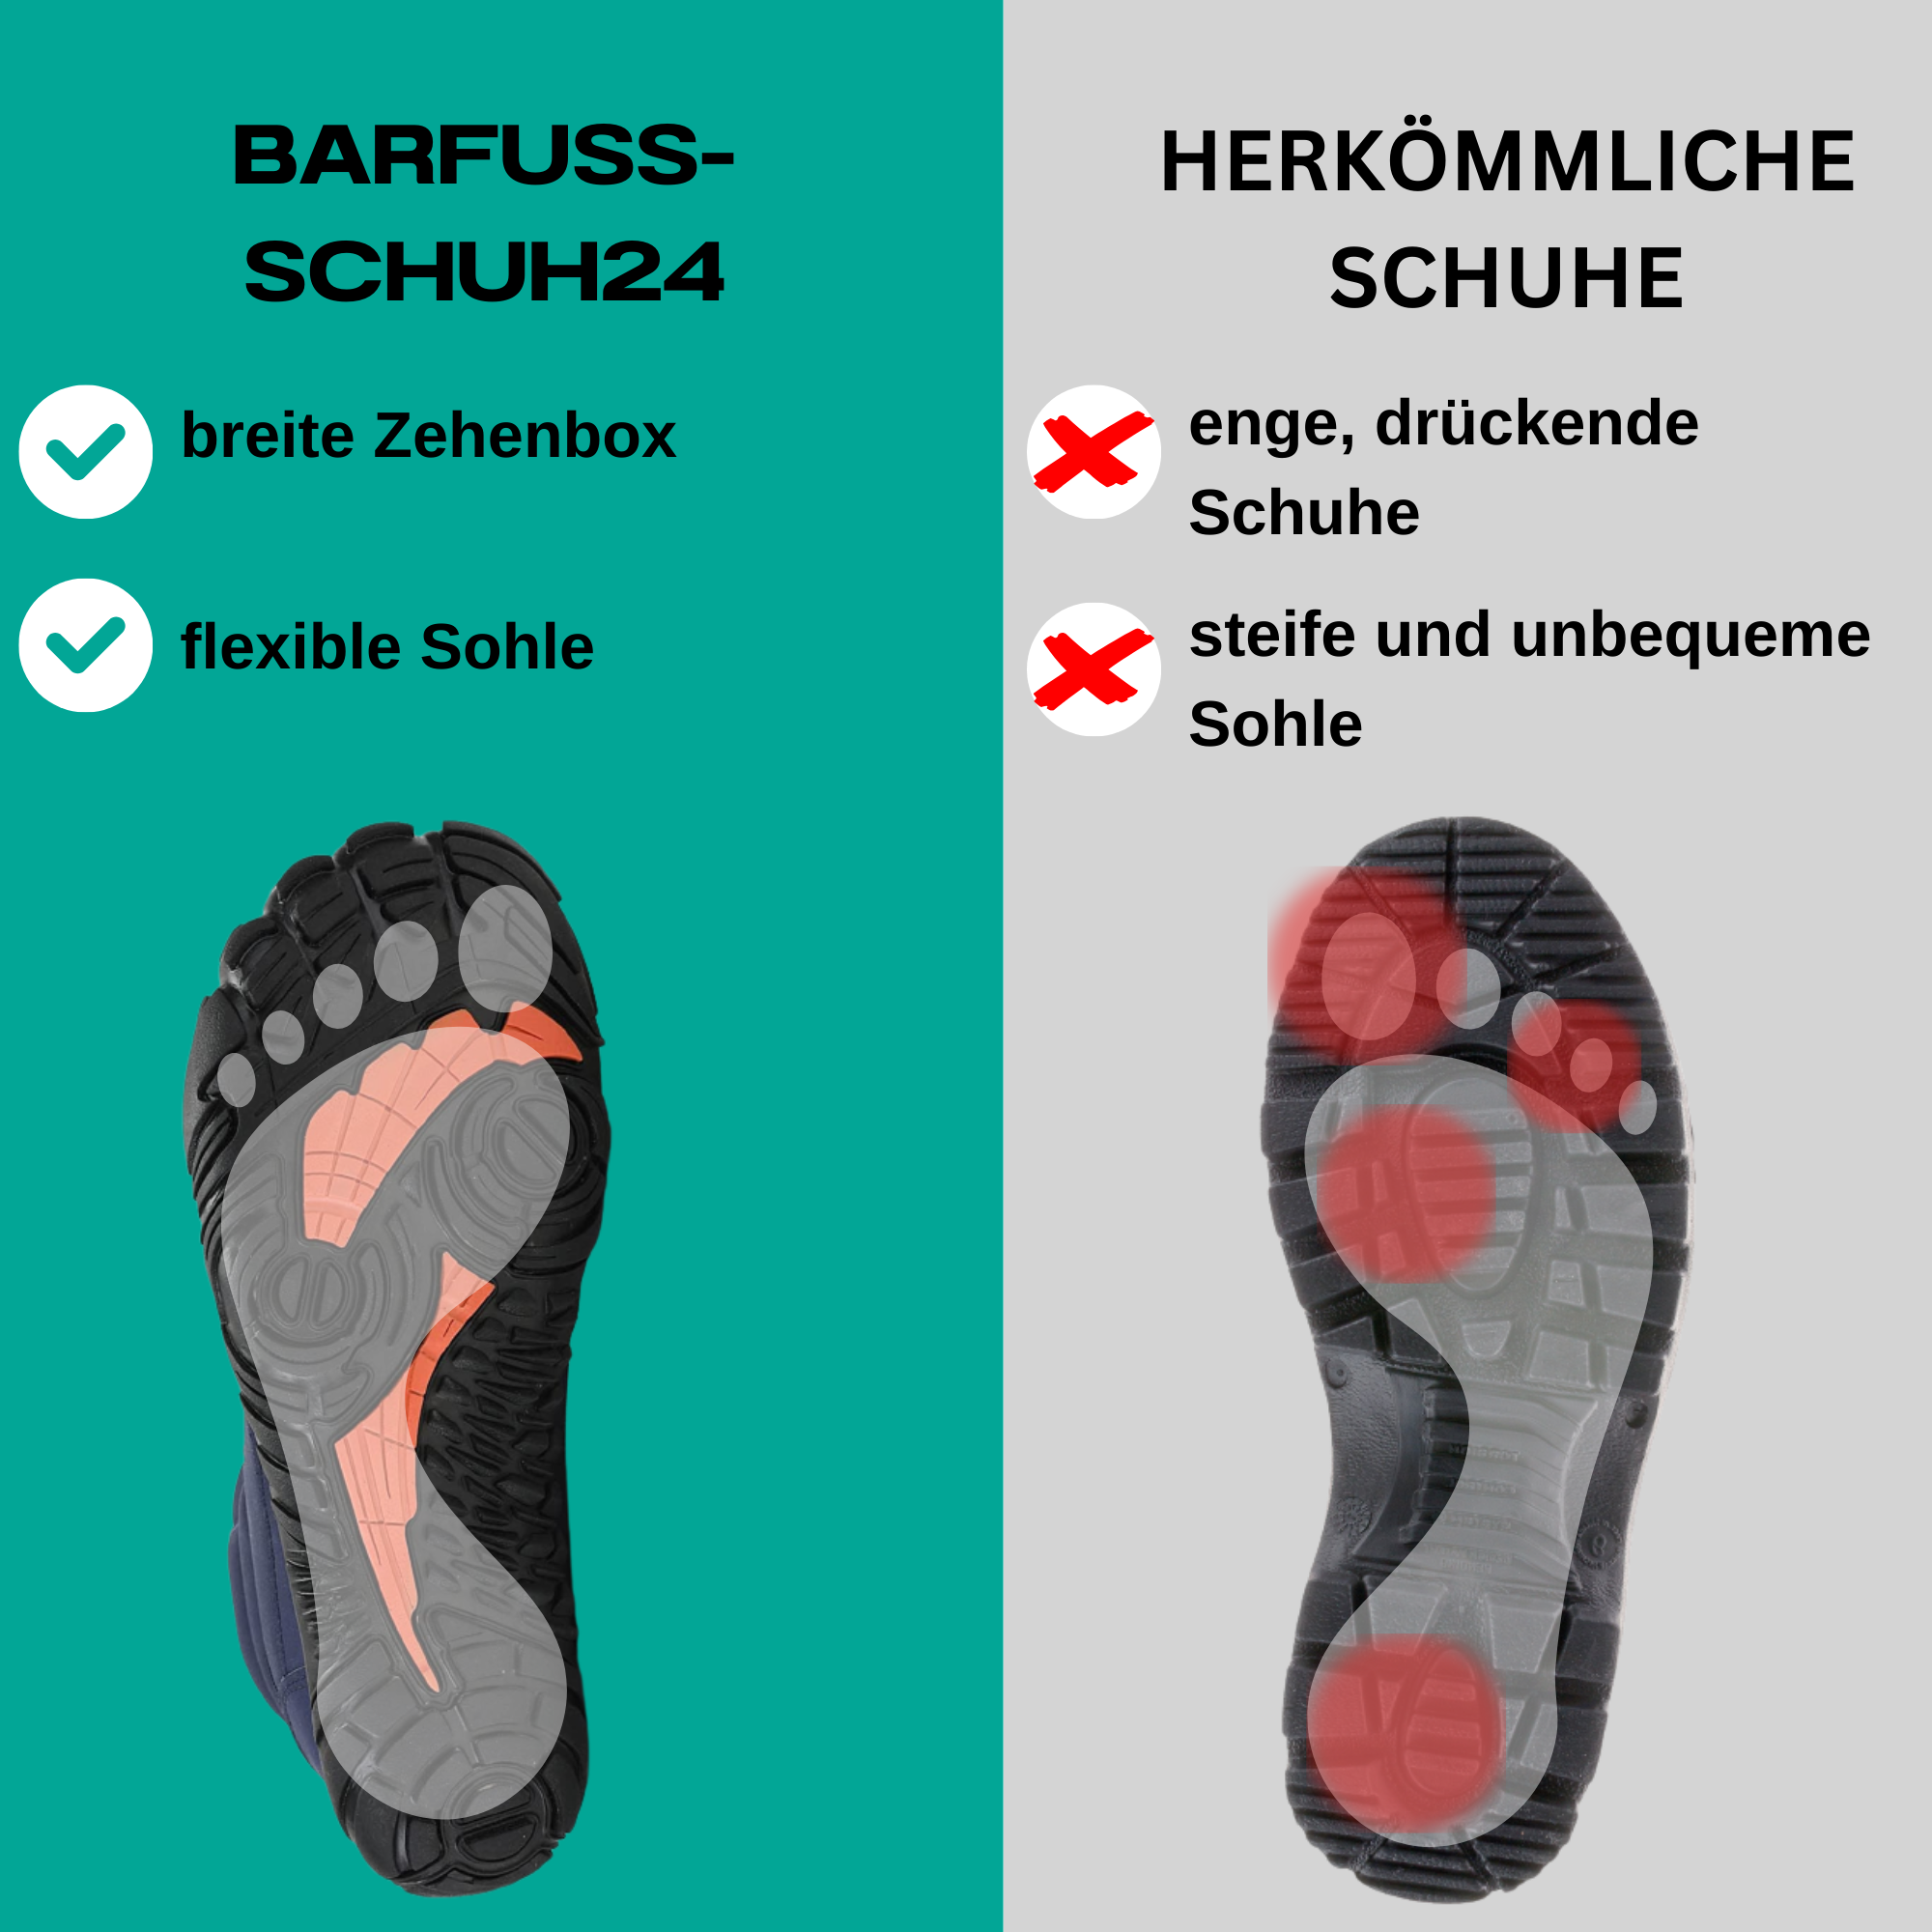 Barfuß-Schuh24